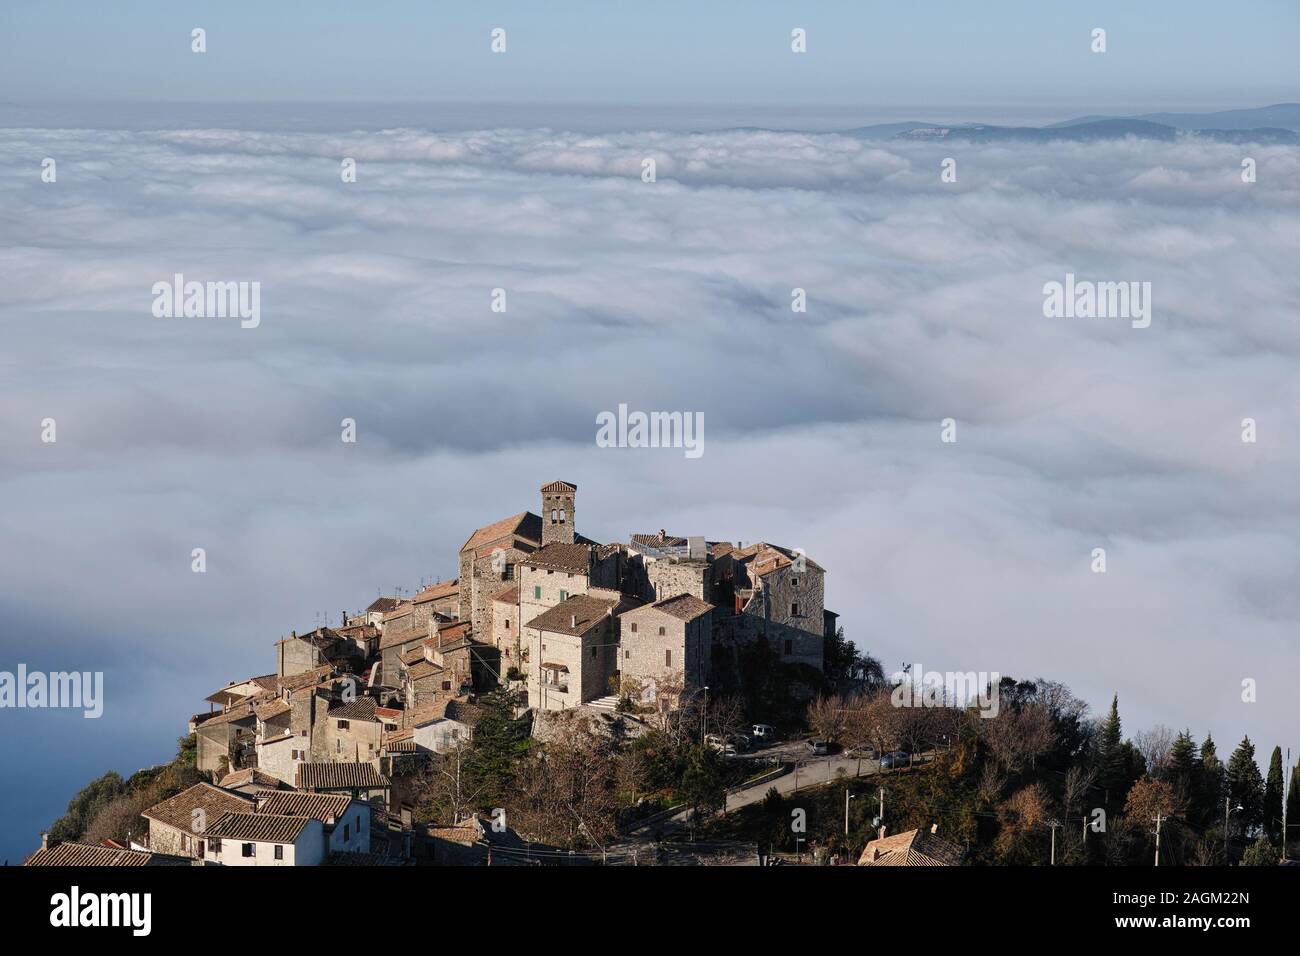 El país de Miranda emerge desde el mar de niebla que cubre la cuenca de Terni Foto de stock